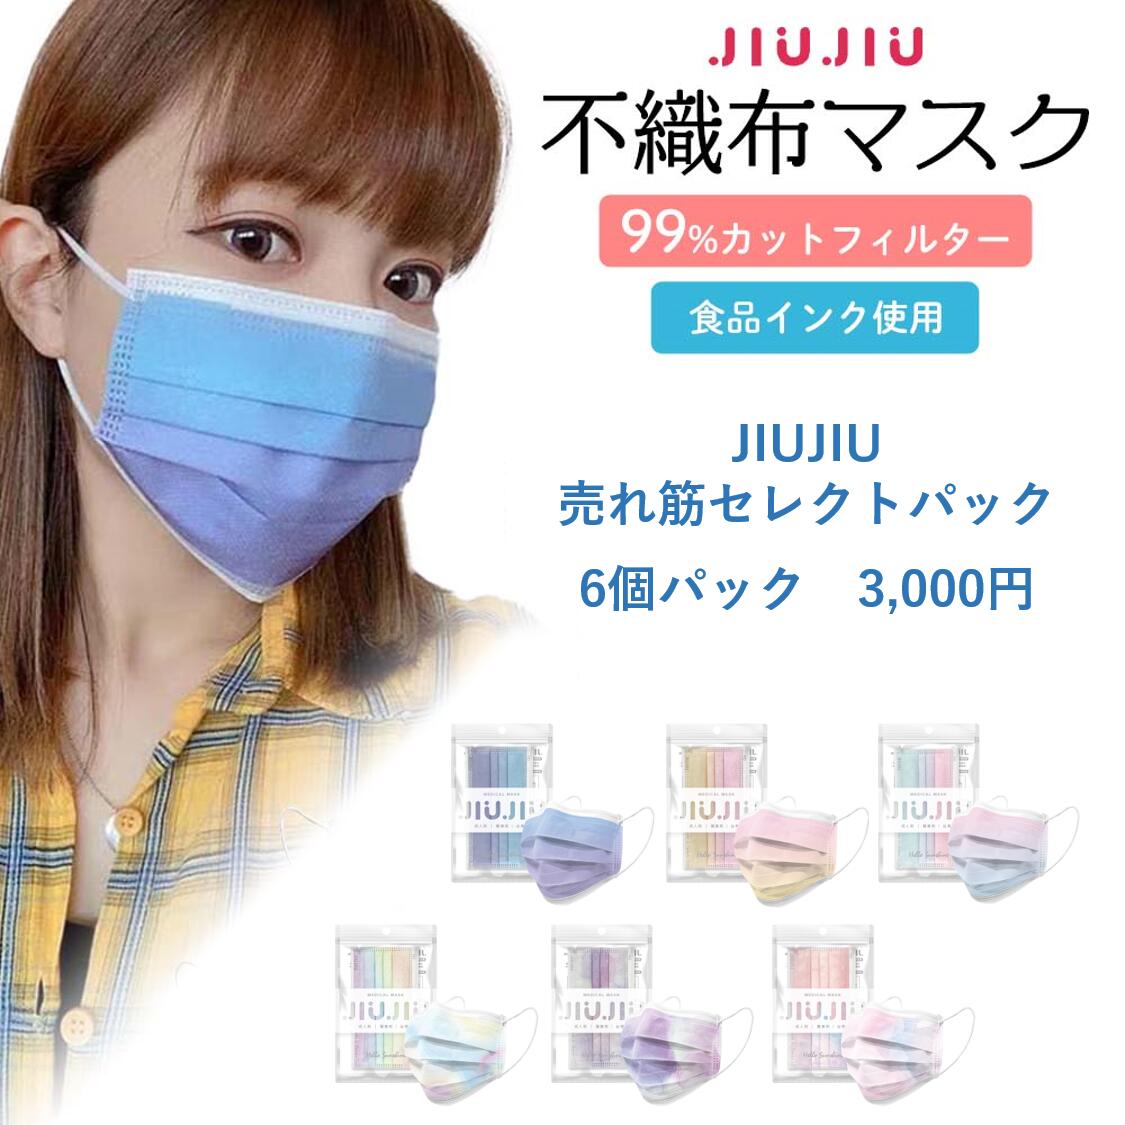 JIUJIU売れ筋セレクト6個パック 3,000